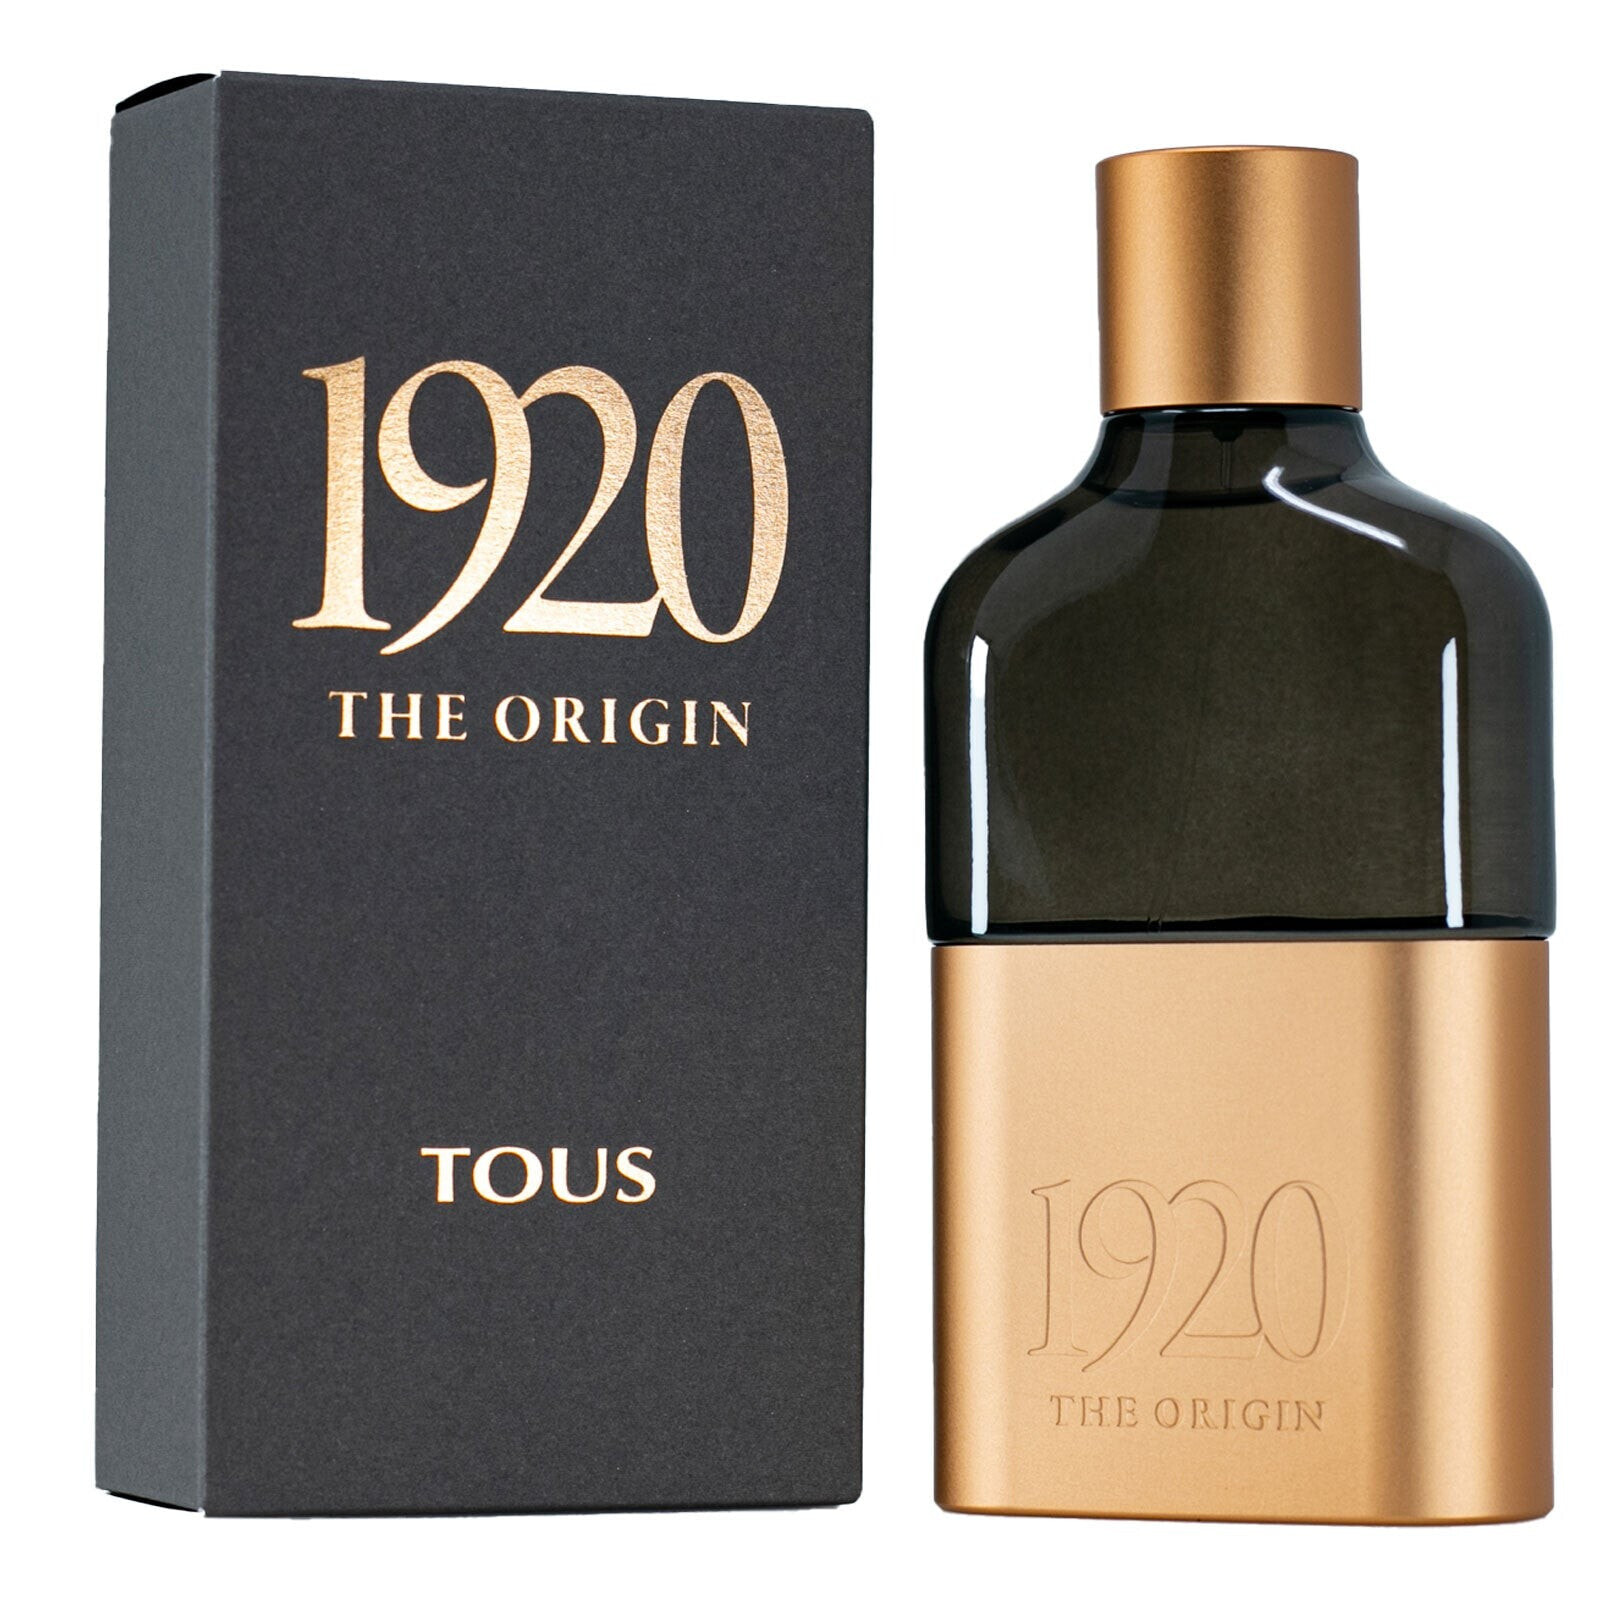 1920 THE ORIGIN eau de parfum spray 60 ml